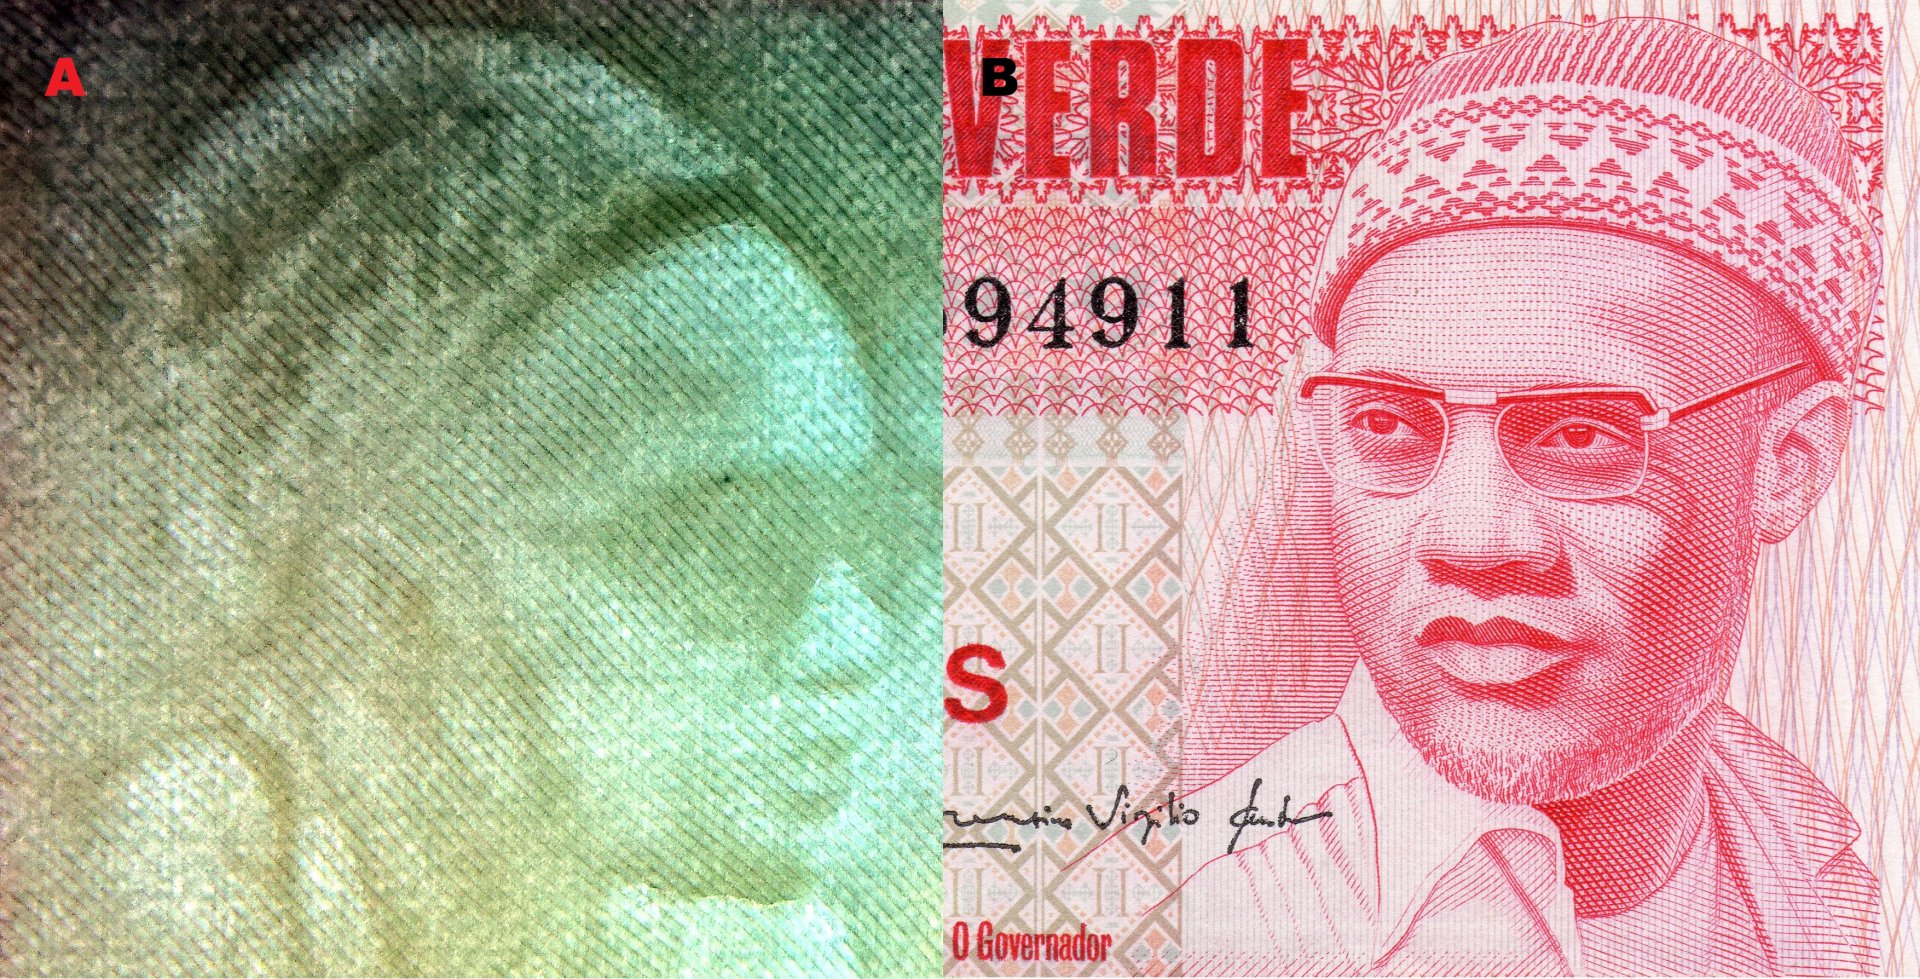 Obr. 3. A) Nesouhlasný portrétový vodoznak - Amílcar Cabral. B) Ústřední motiv averzu bankovky - Amílcar Cabral.